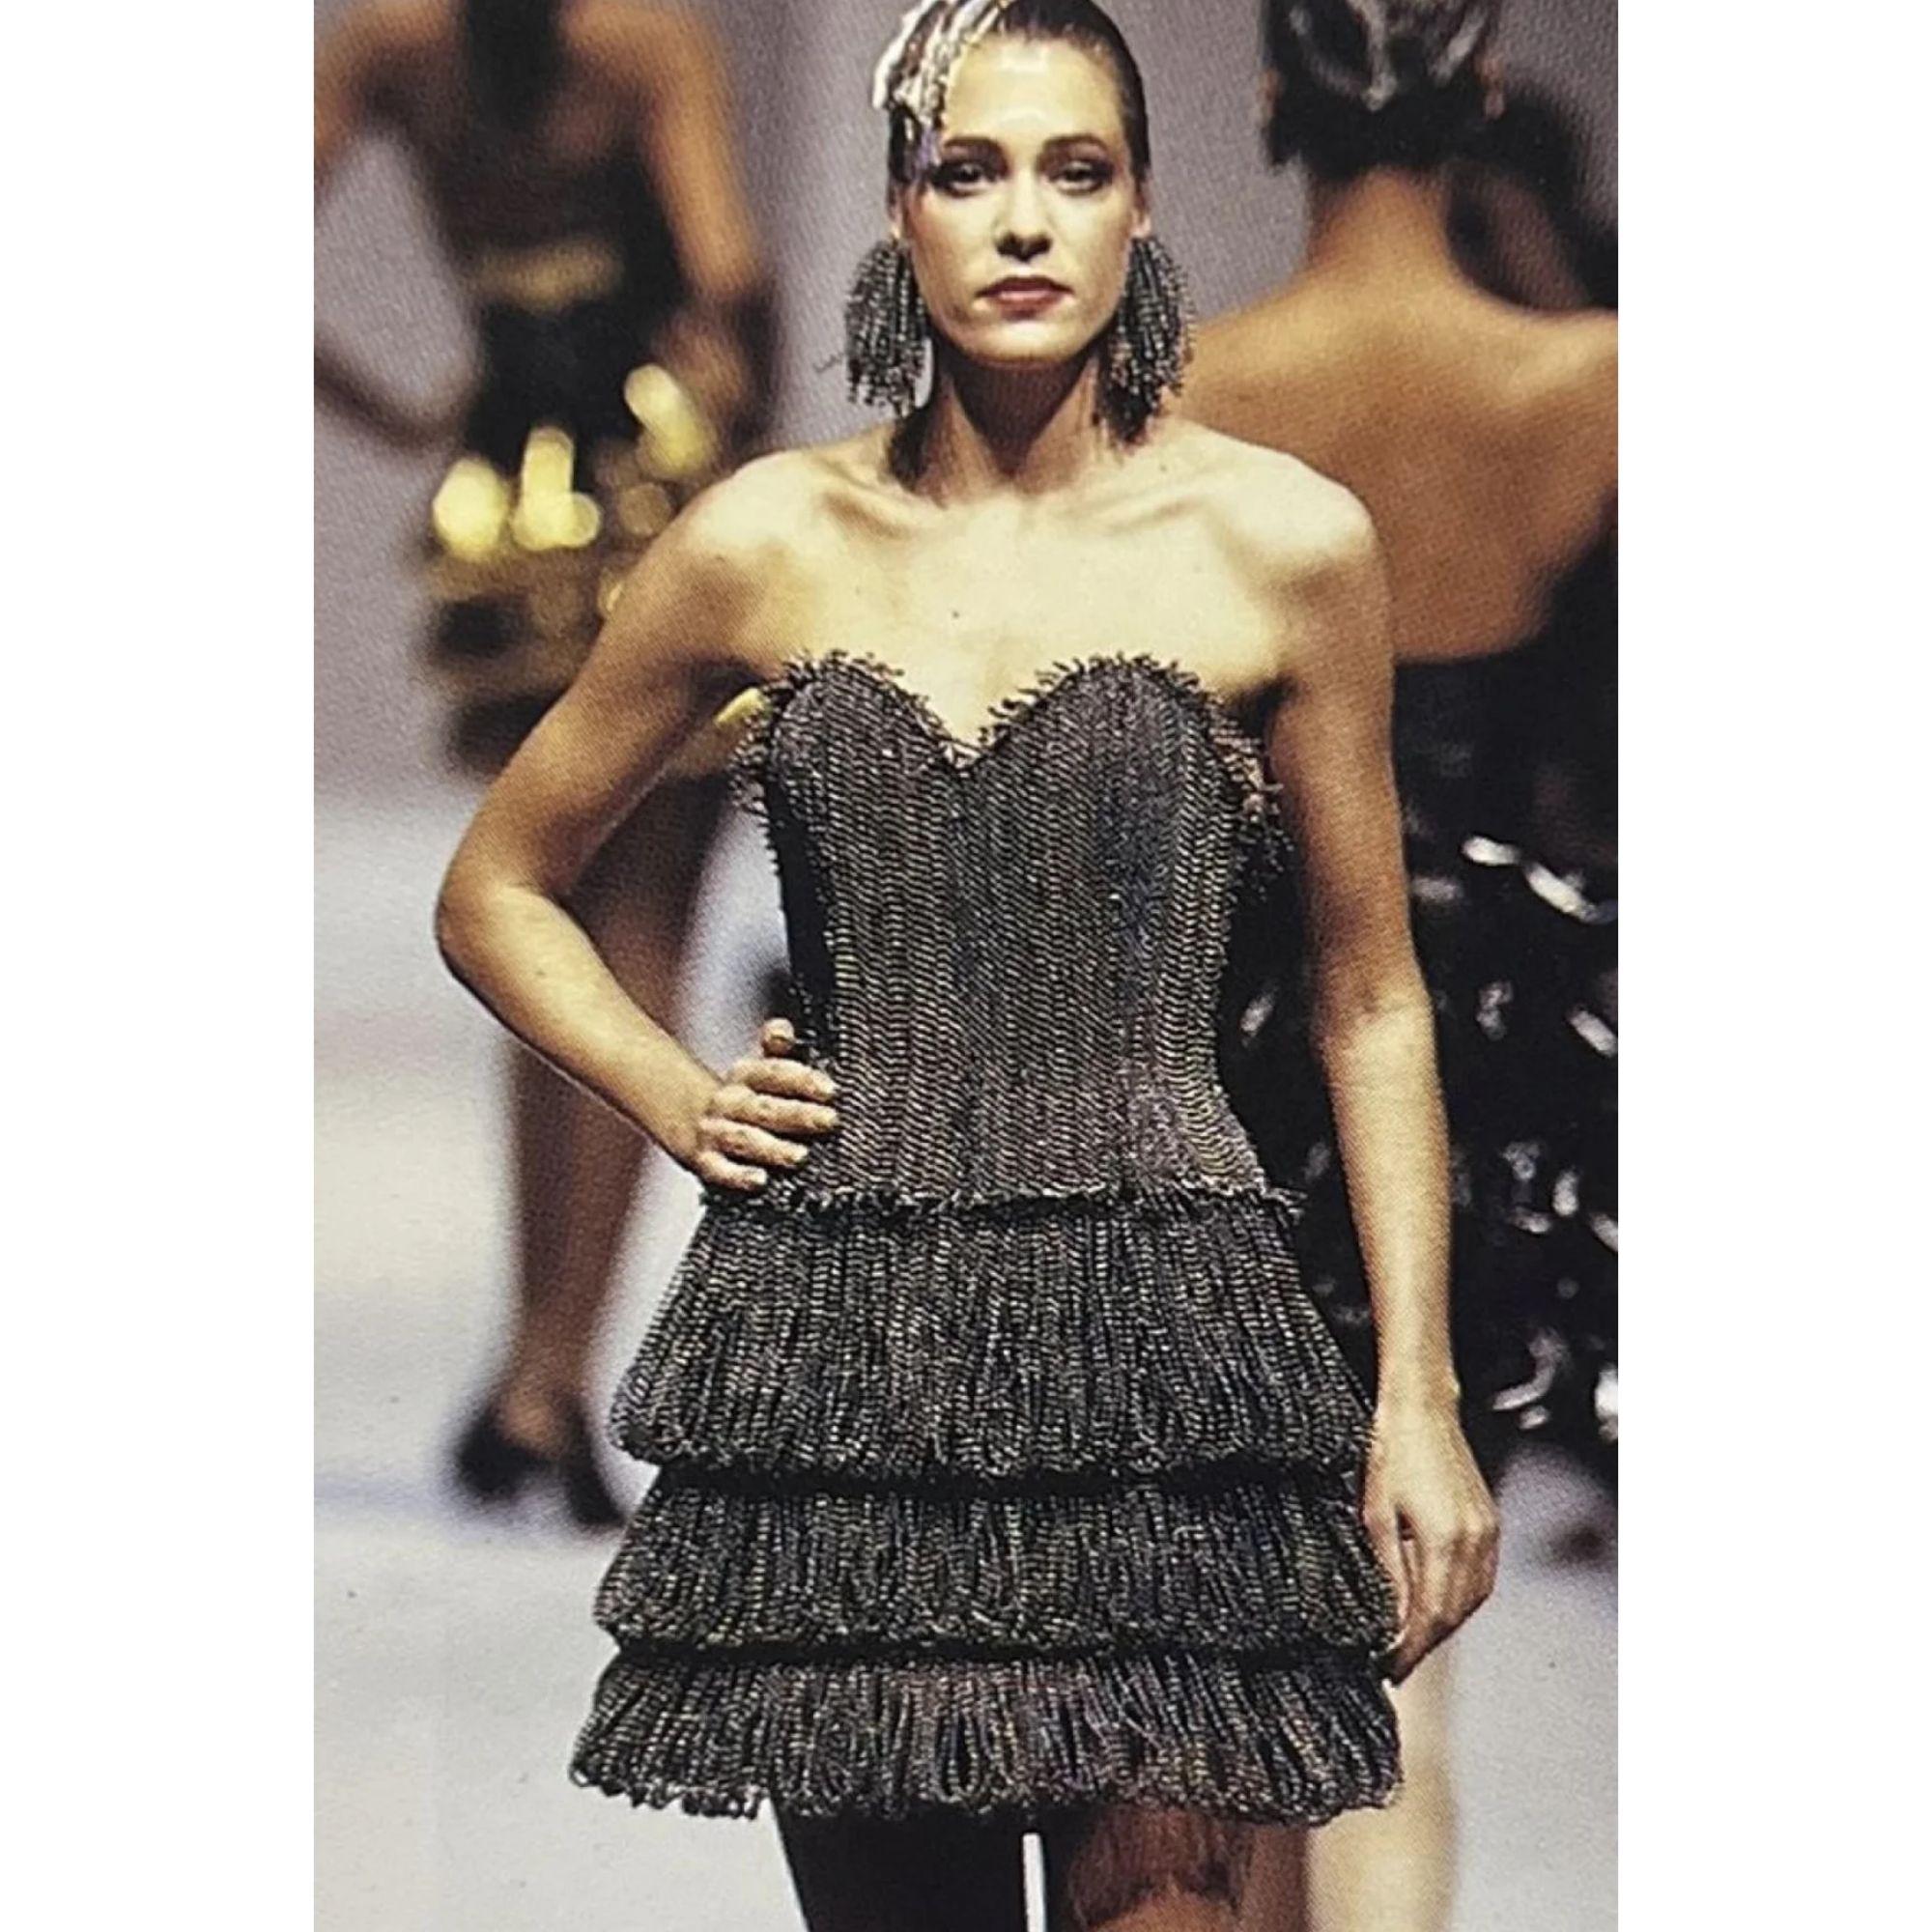 S/S 1988 Paco Rabanne Haute Couture schillernde Perlenbustier, Rock und Ohrring-Set. Strukturiertes, trägerloses Bustier mit perlenbesetzten Fransen an der Brust und Saum, der im Rücken mit einer Seidensatinschleife gebunden wird. Passt perfekt zu